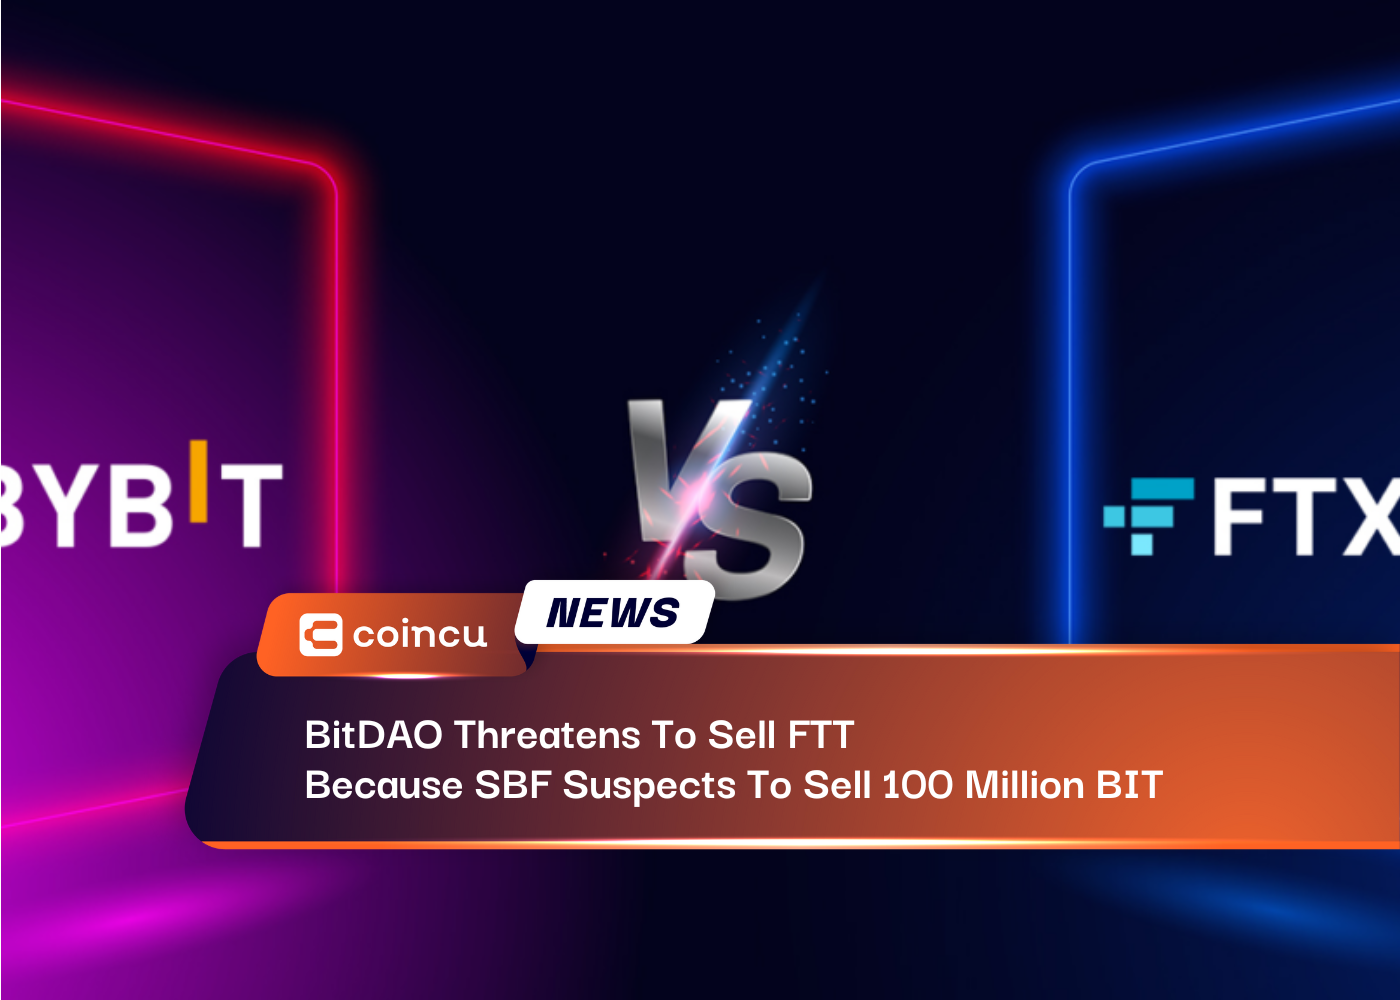 BitDAO는 SBF가 100억 BIT를 판매할 것으로 의심되기 때문에 FTT를 판매하겠다고 위협합니다.